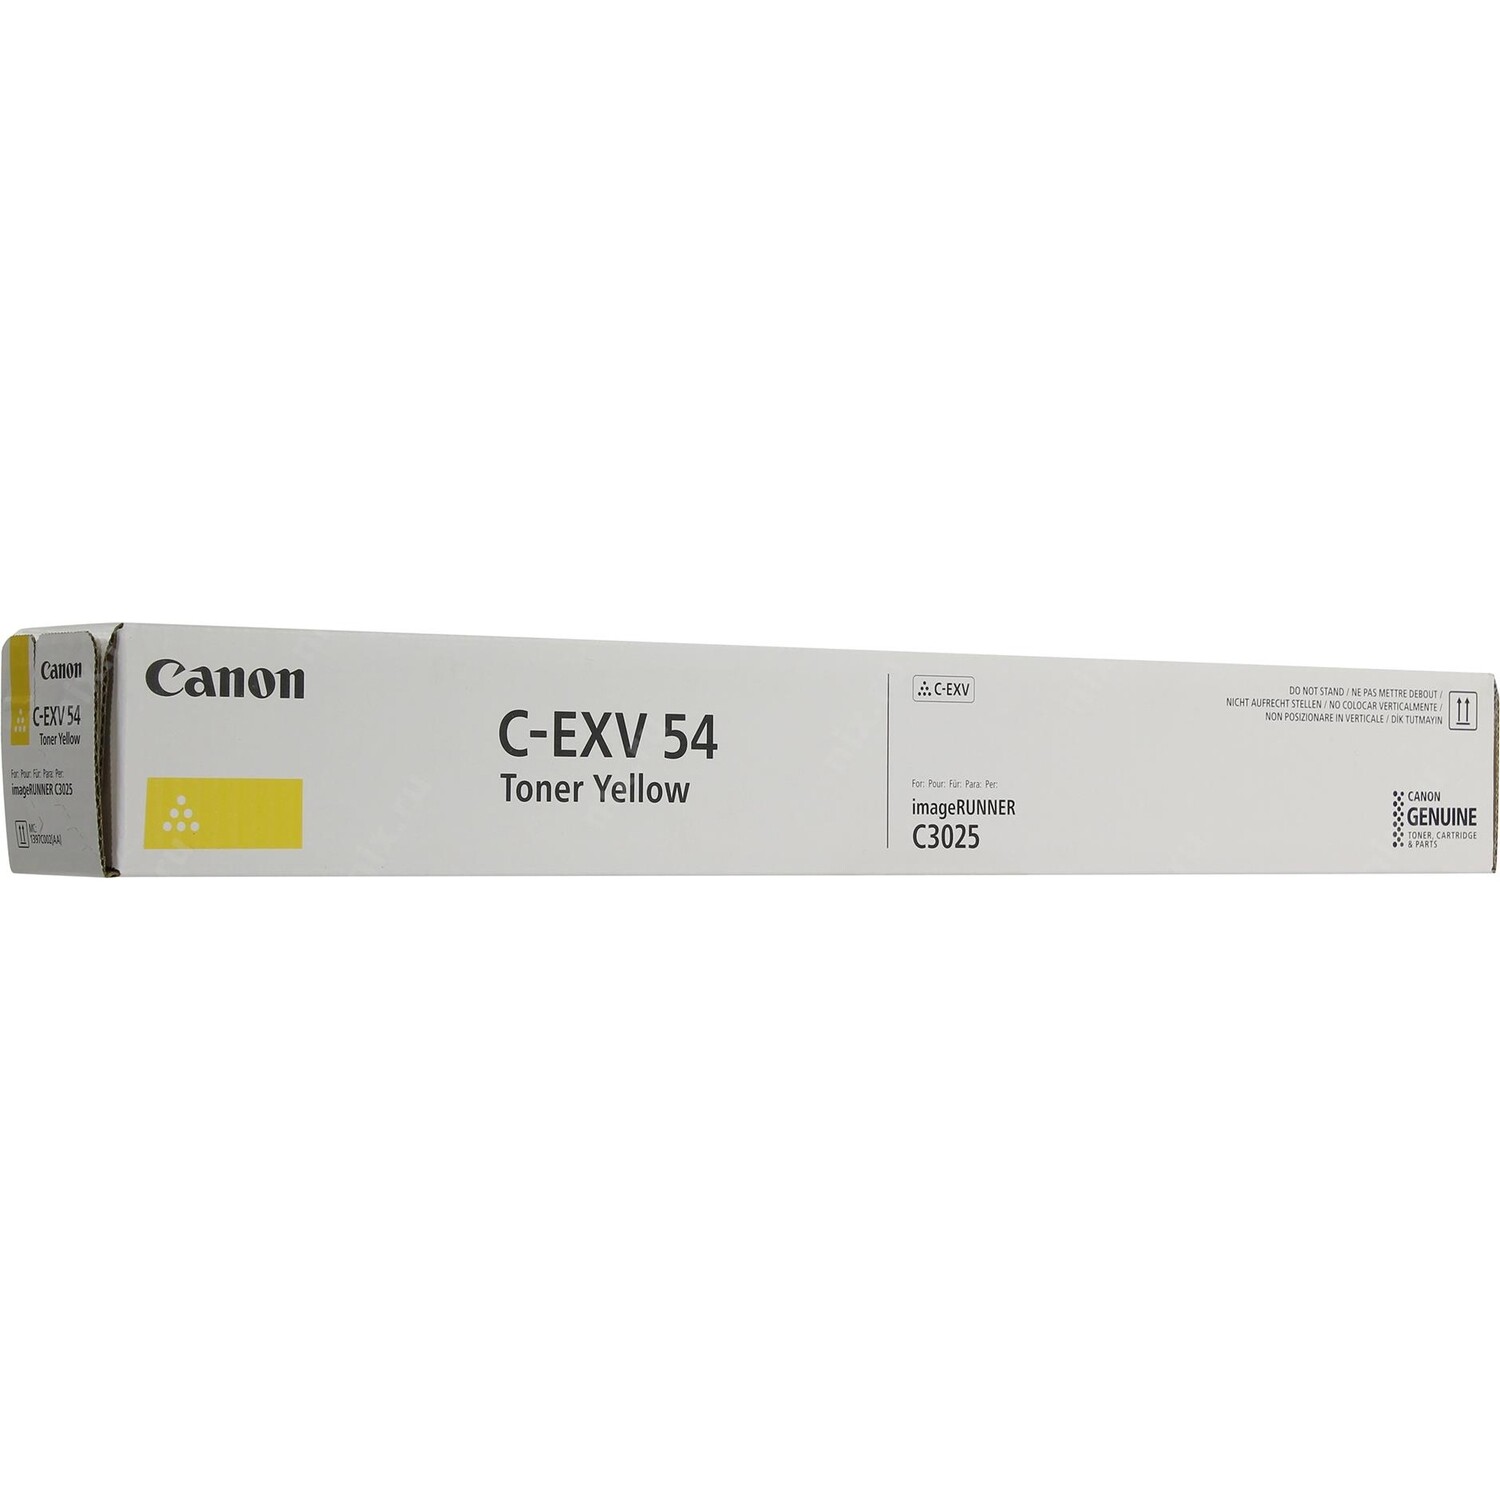 CANON C-EXV 54 YELLOW-Canon ImageRunner C3025